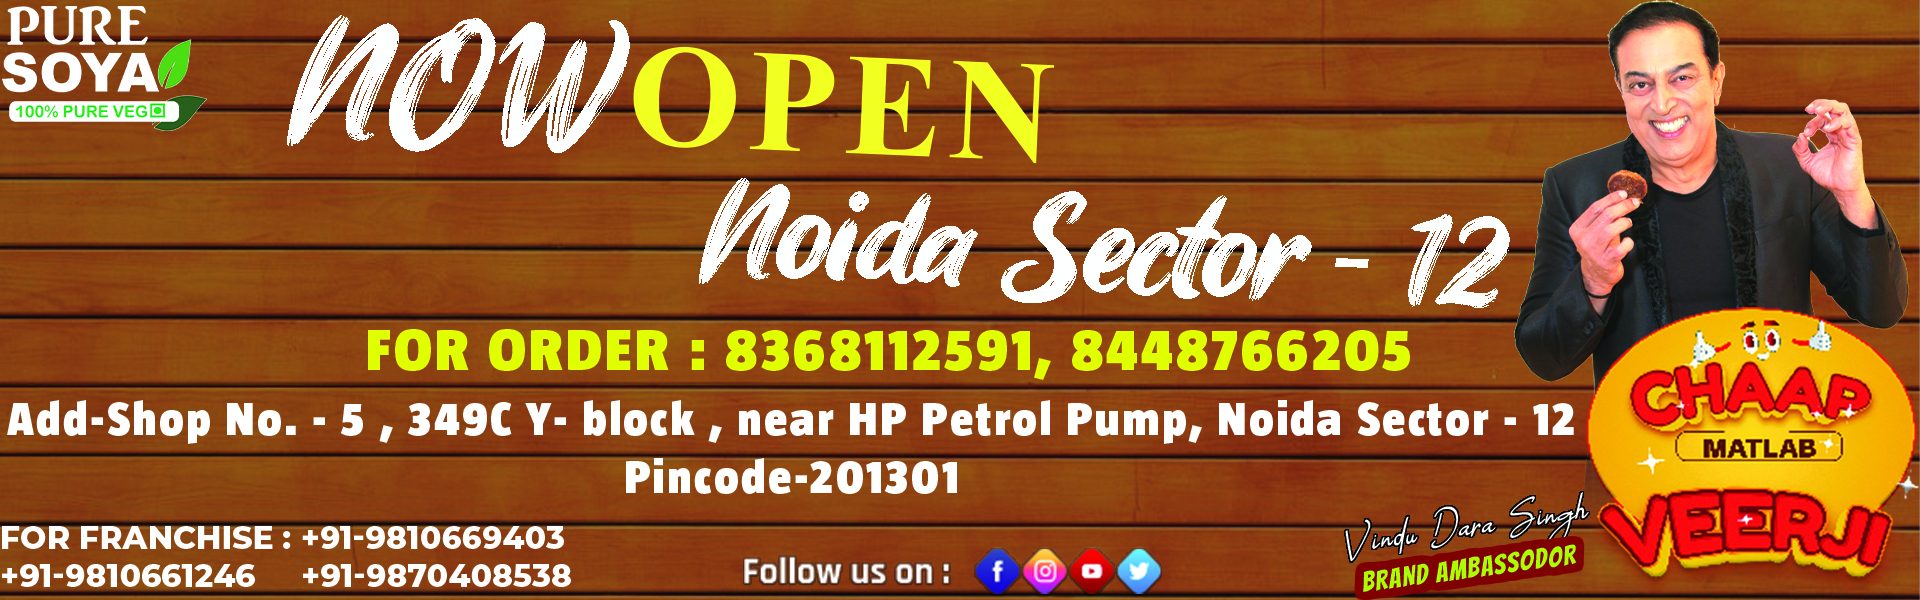 Noida Sector - 12 website